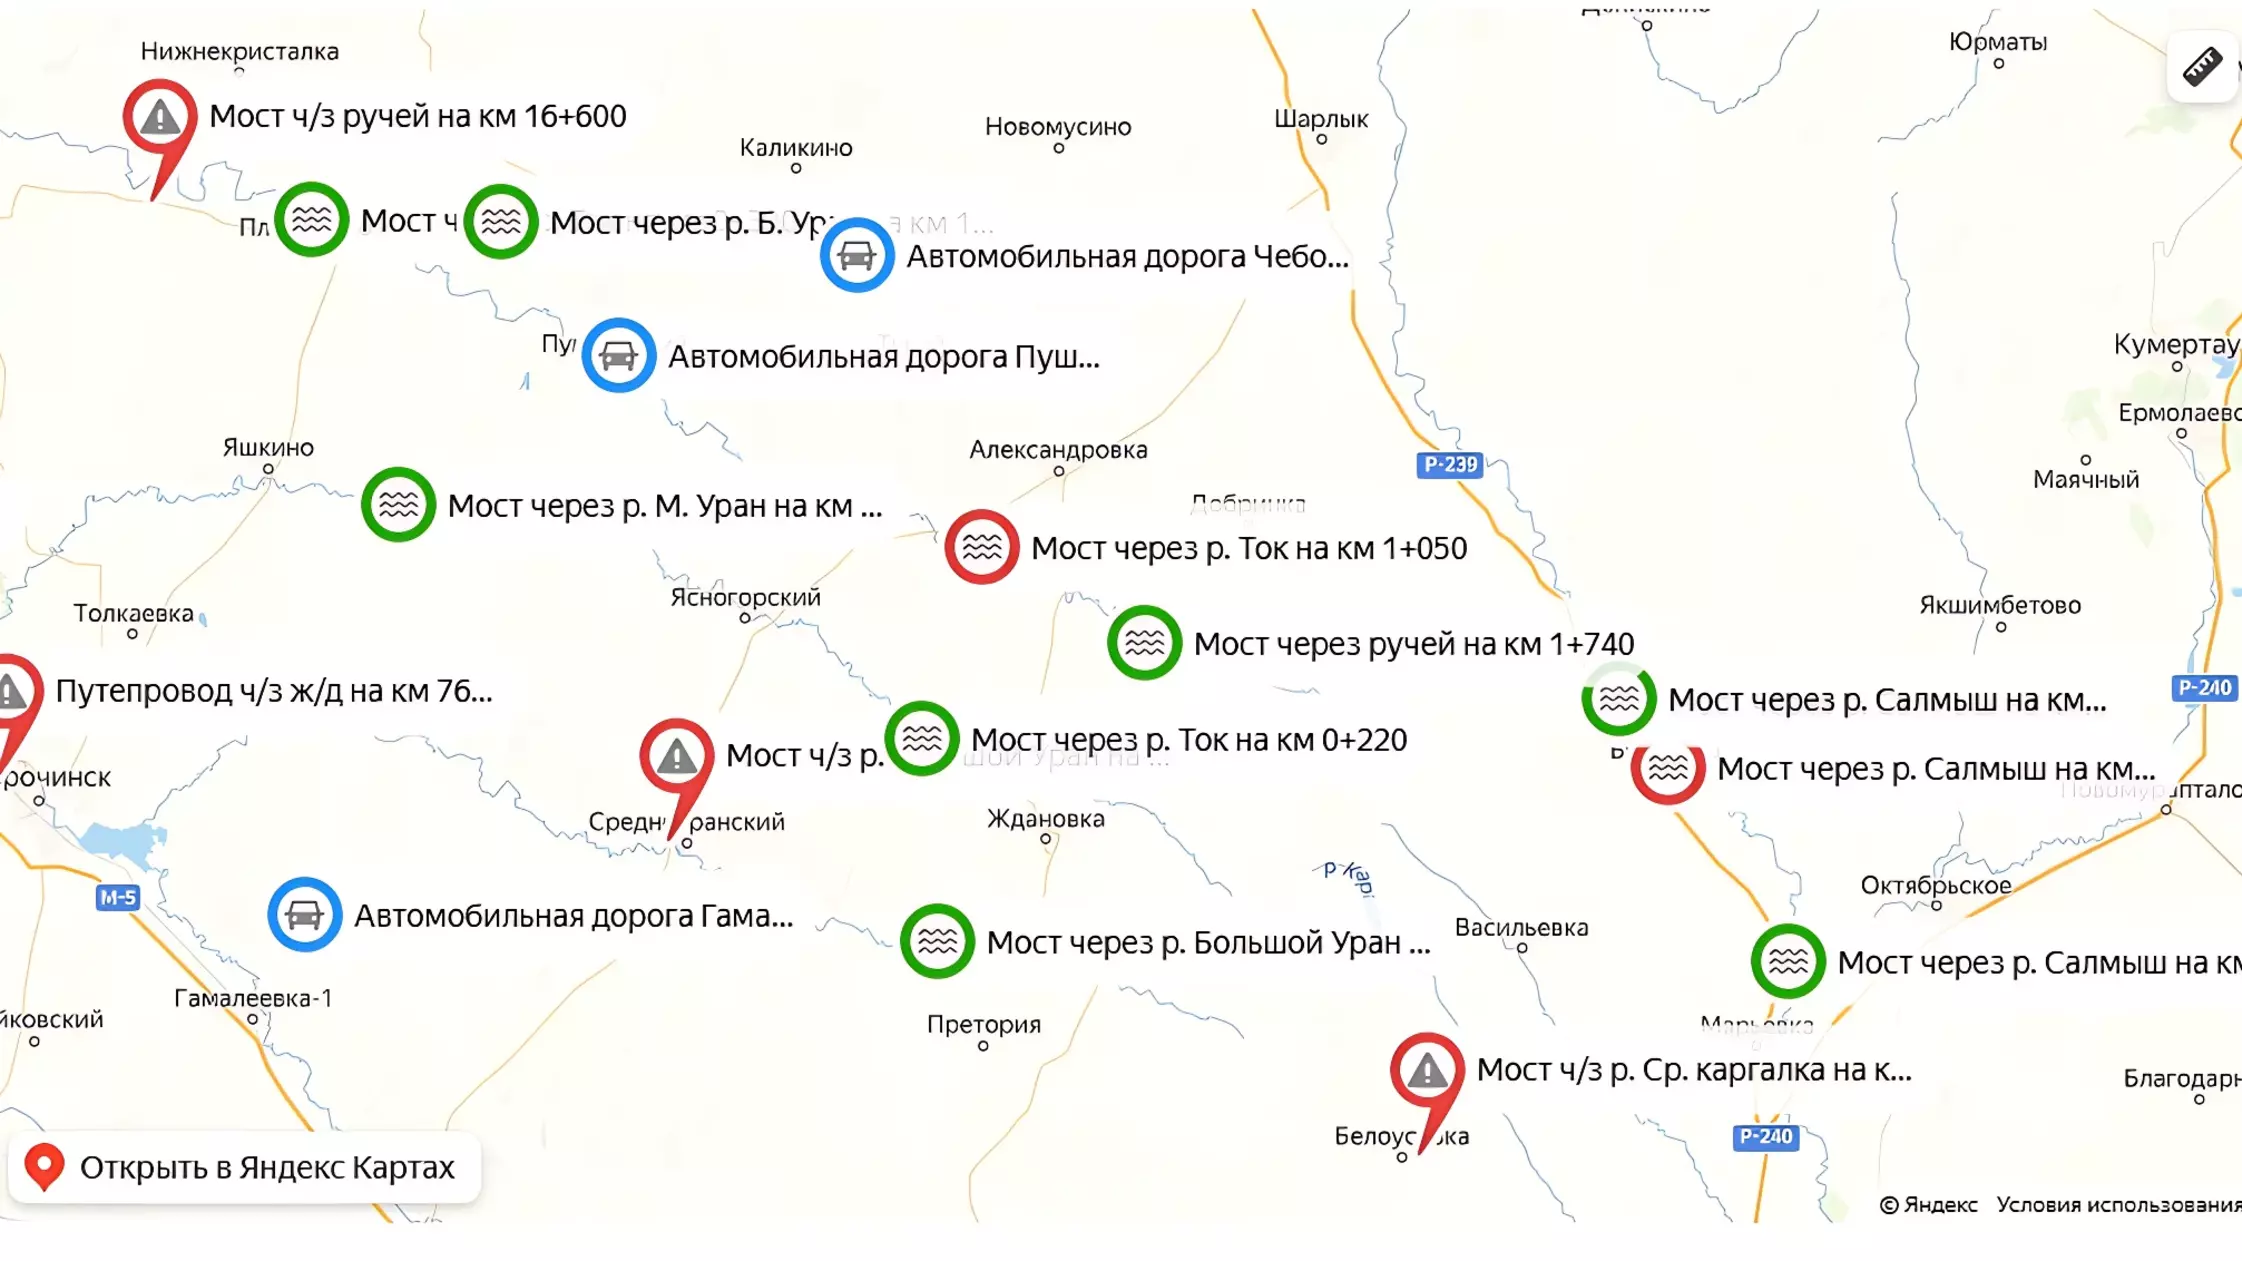 Информация о паводковой обстановке на дорогах Оренбуржья есть на онлайн-карте